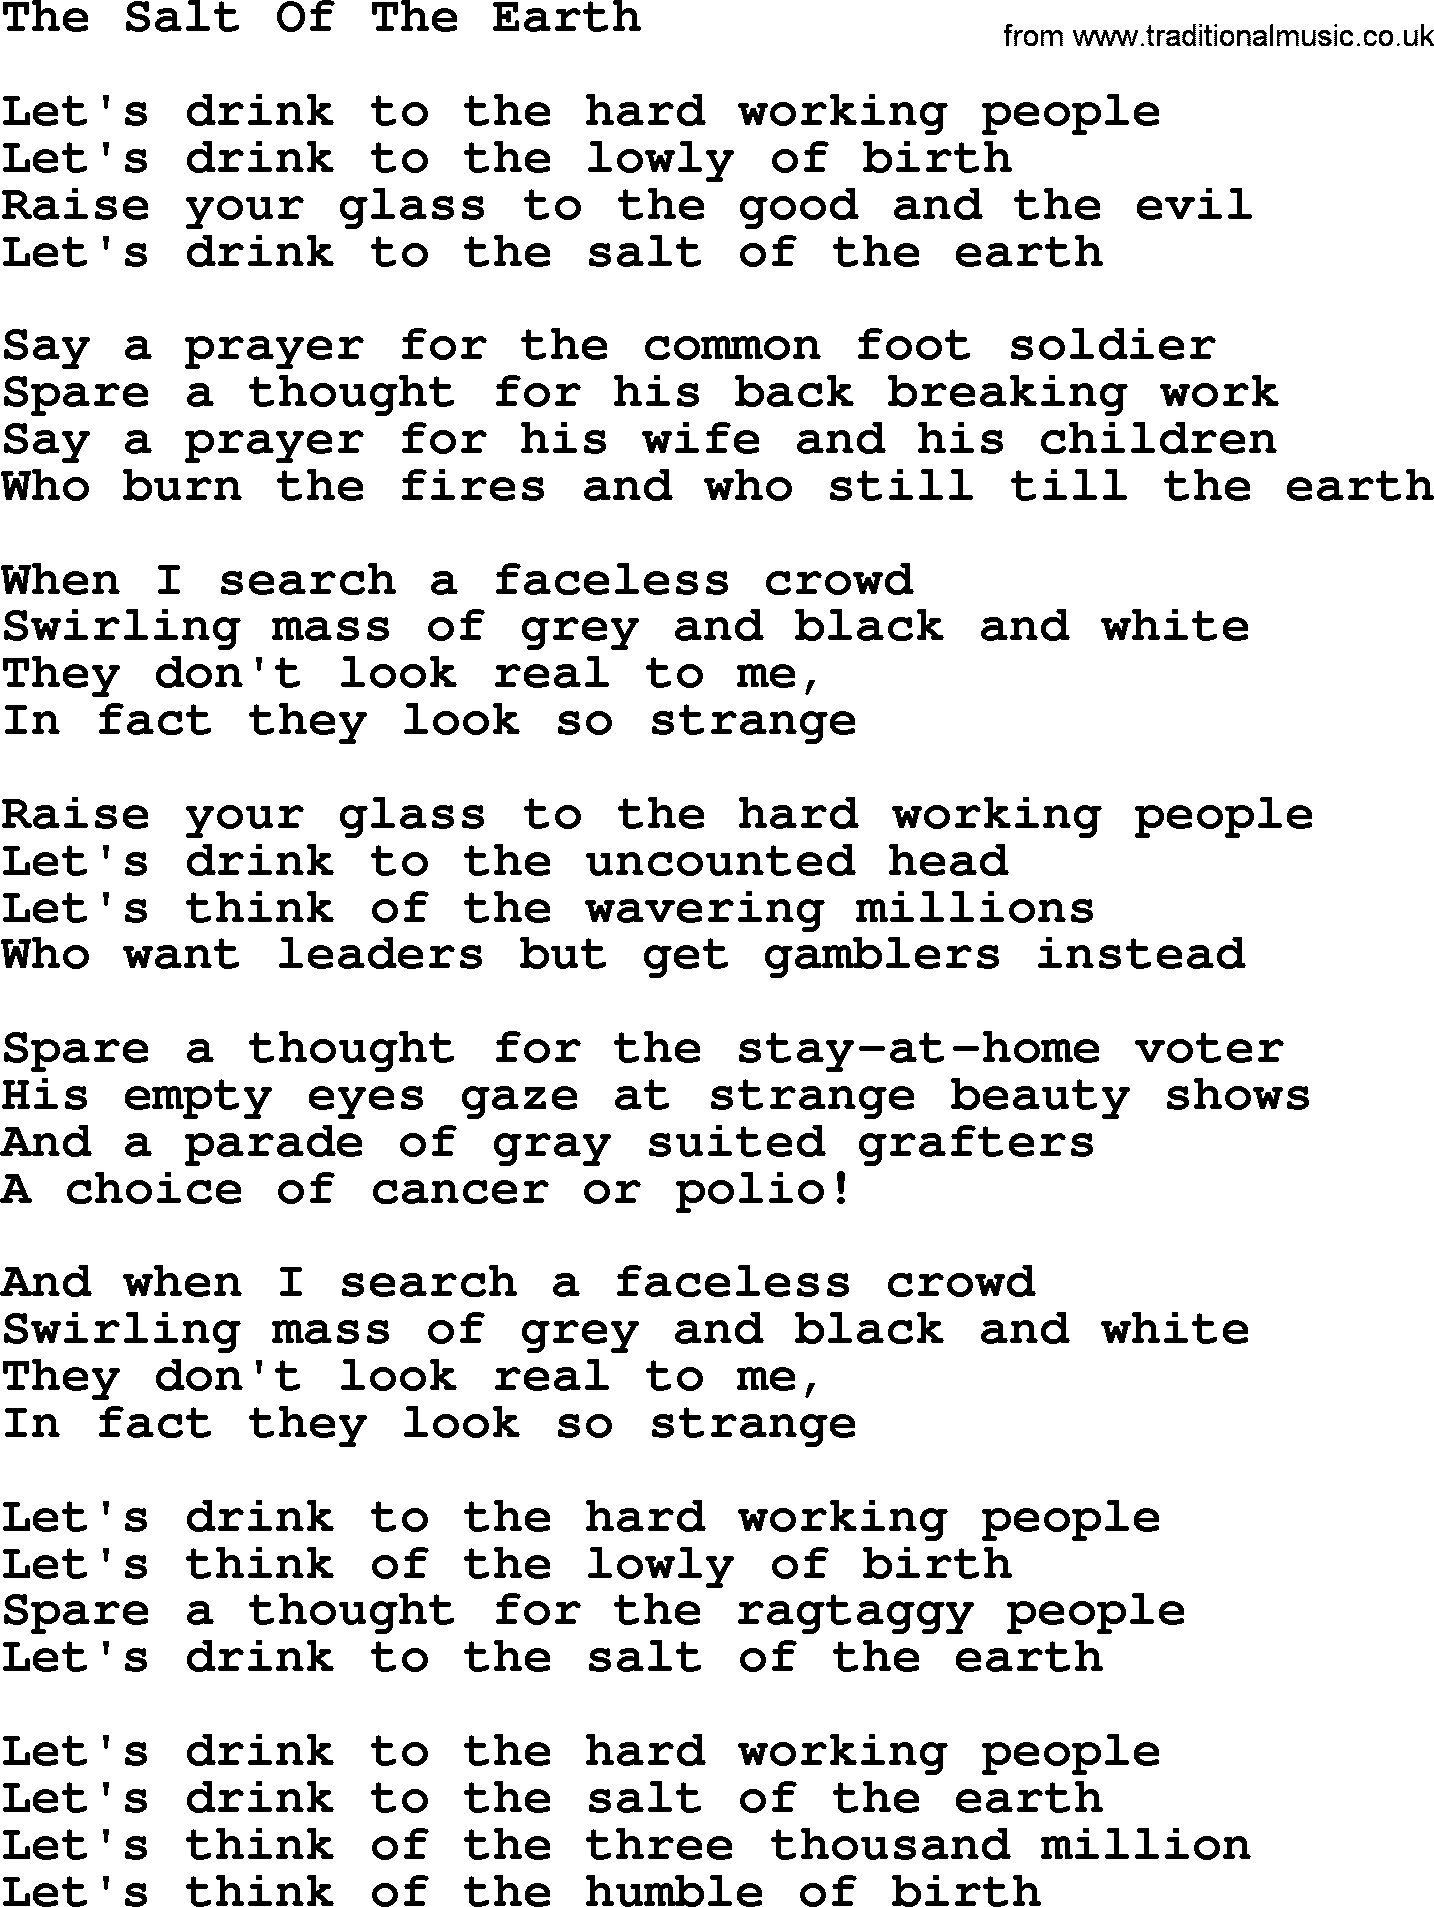 Joan Baez song The Salt Of The Earth, lyrics